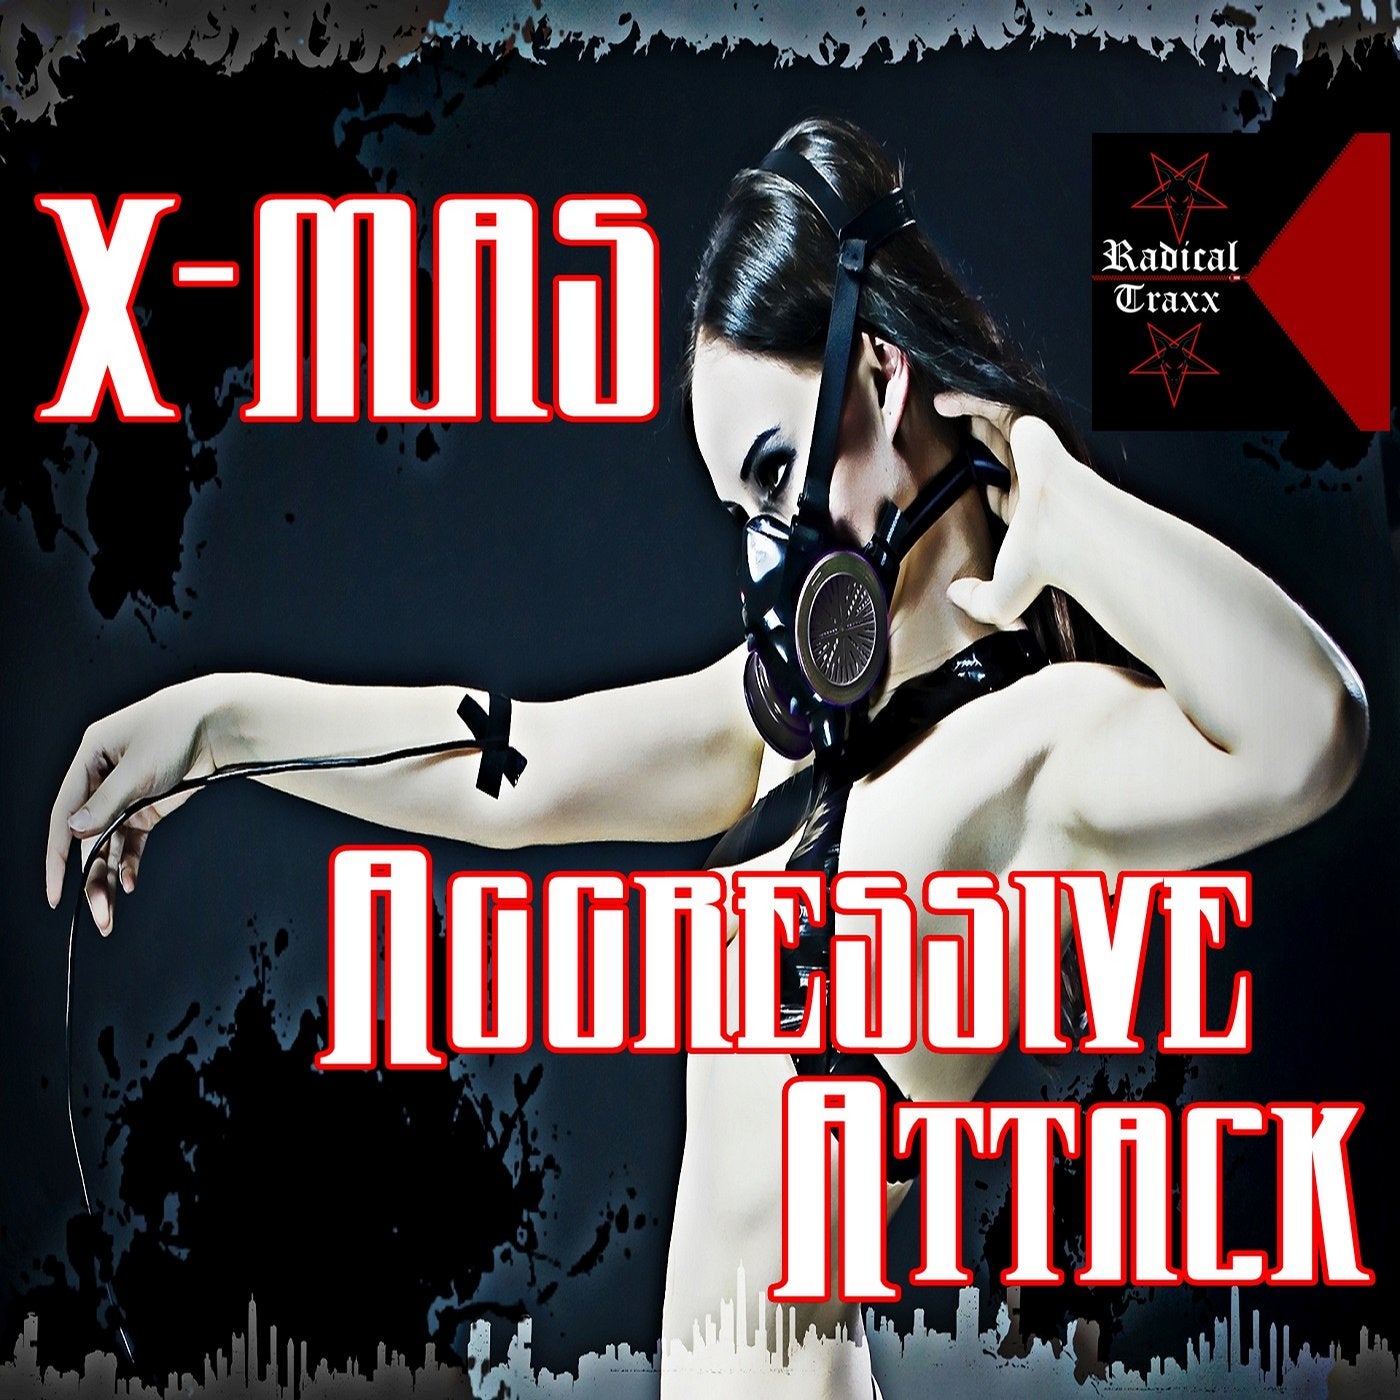 X-Mas Aggressive Attack